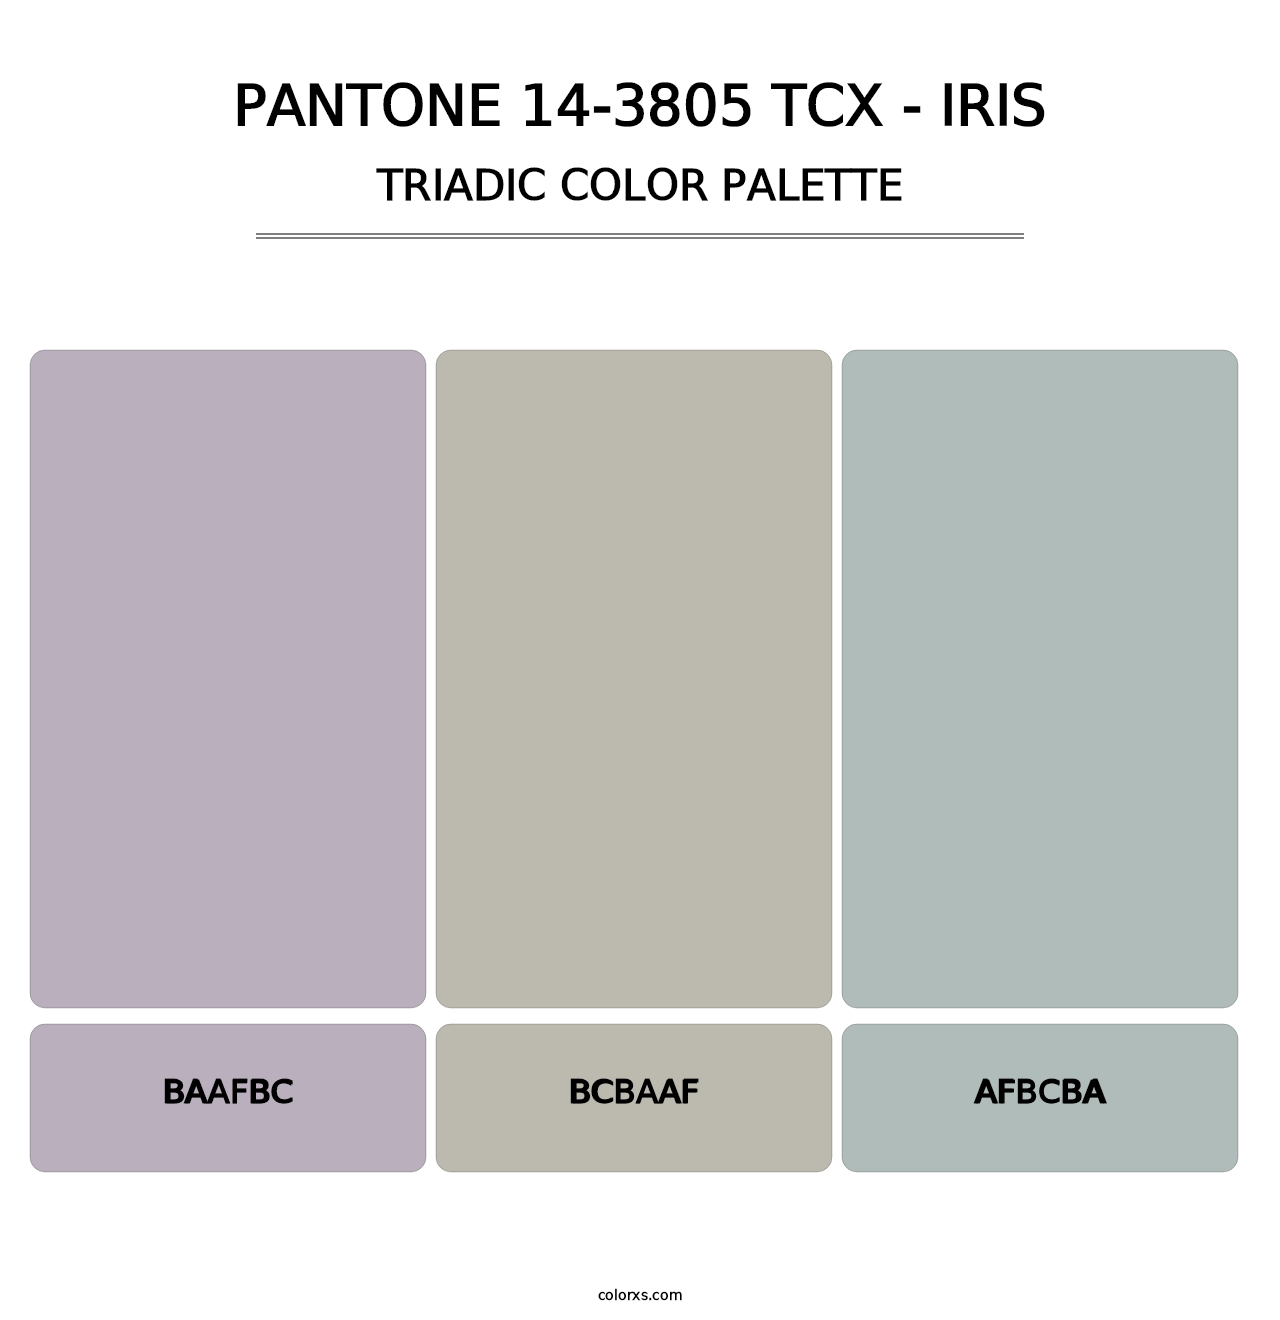 PANTONE 14-3805 TCX - Iris - Triadic Color Palette